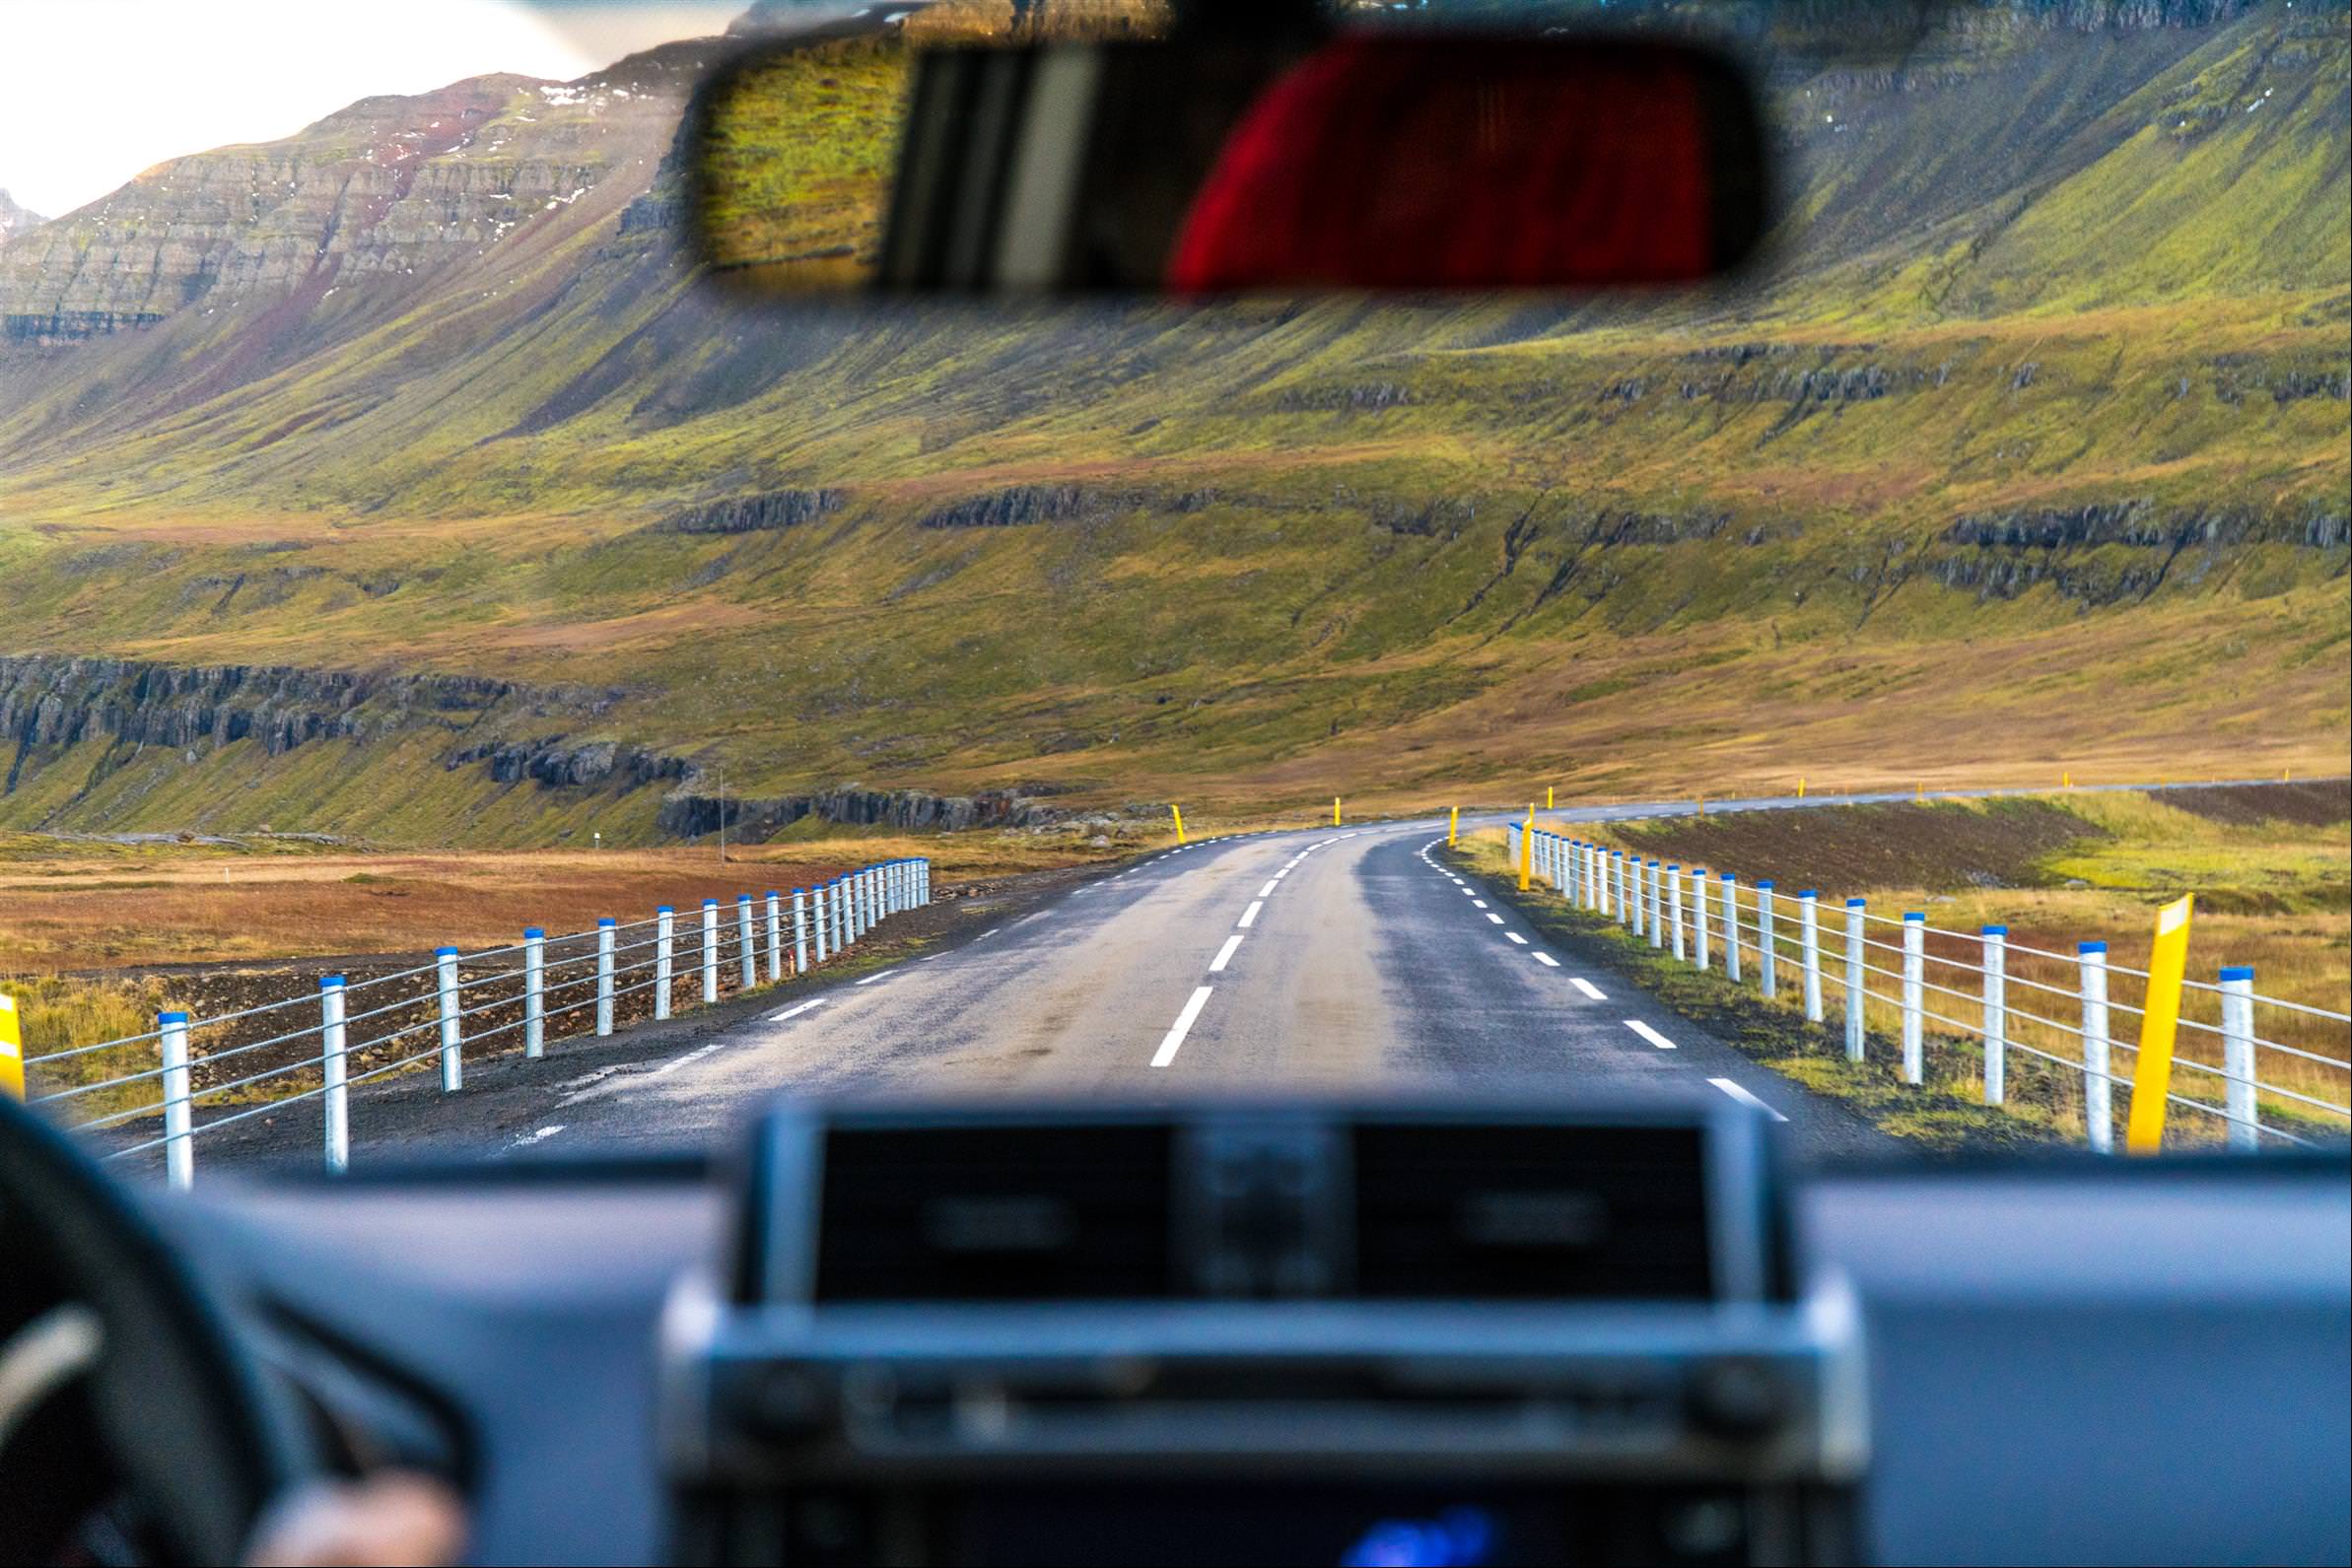 [冰島/東岸] 冰島自駕推薦路線, 埃伊爾斯塔濟&塞濟斯菲厄澤 93 號公路